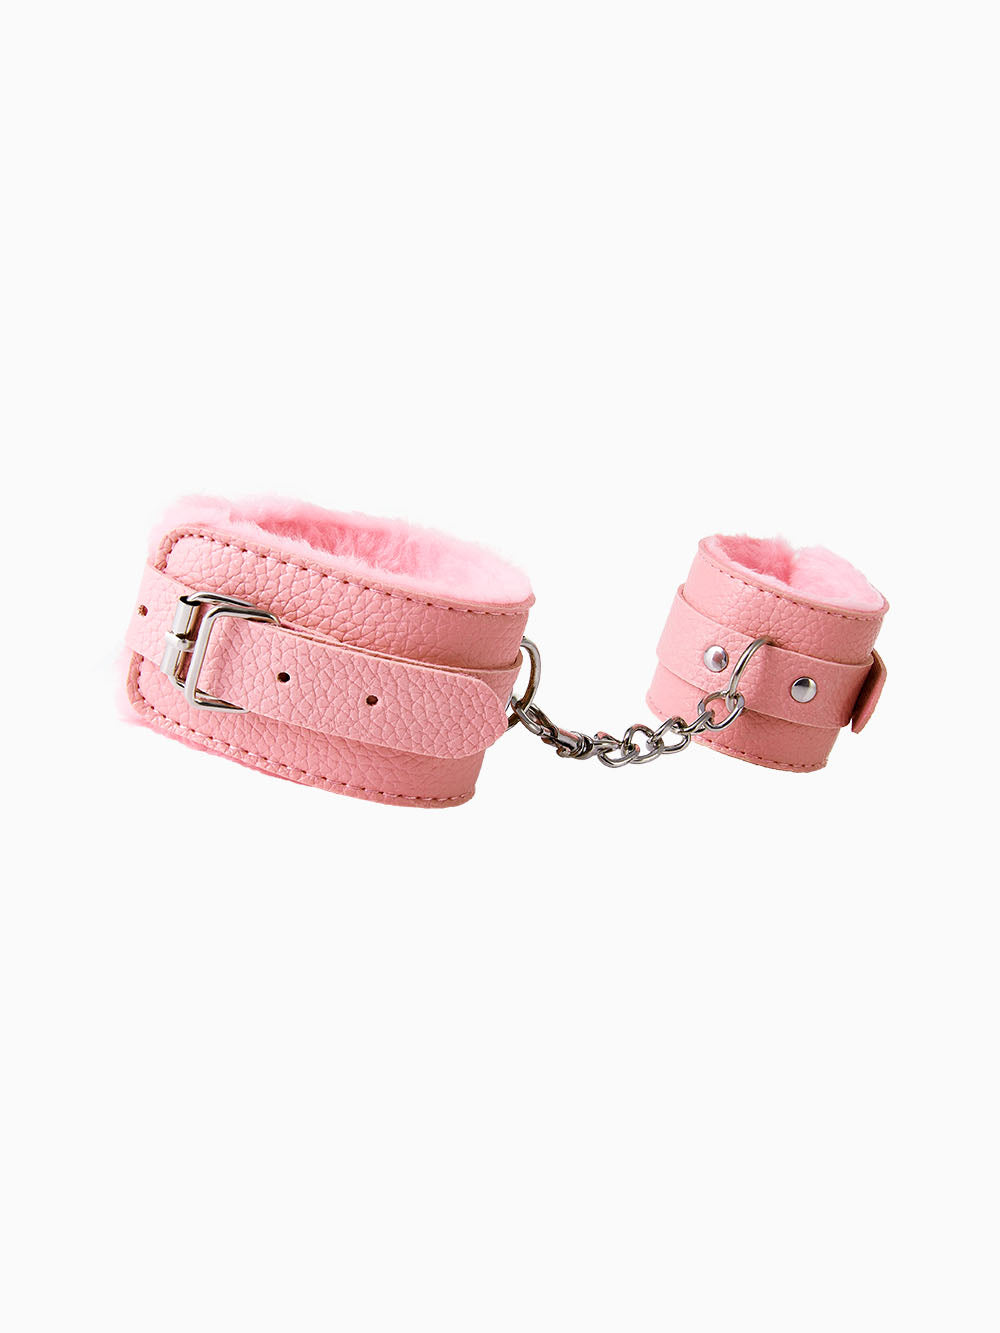 Pillow Talk Beginners Lined Handcuffs, Pink